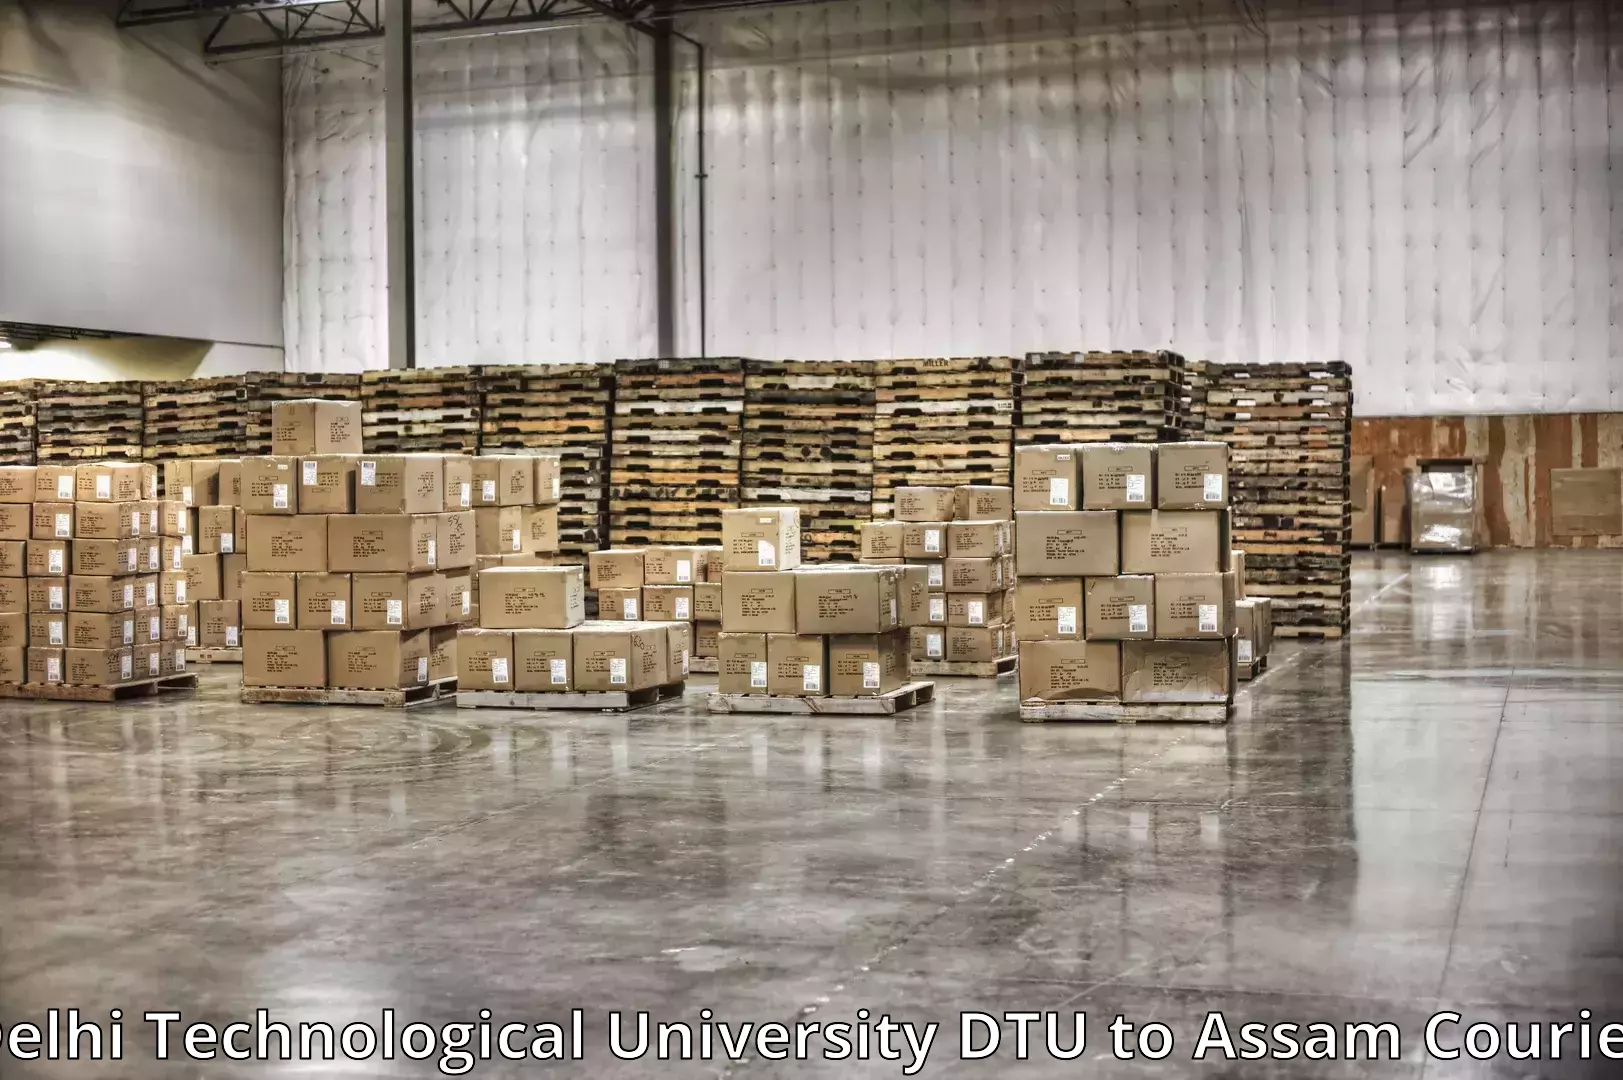 Furniture moving plans Delhi Technological University DTU to Assam